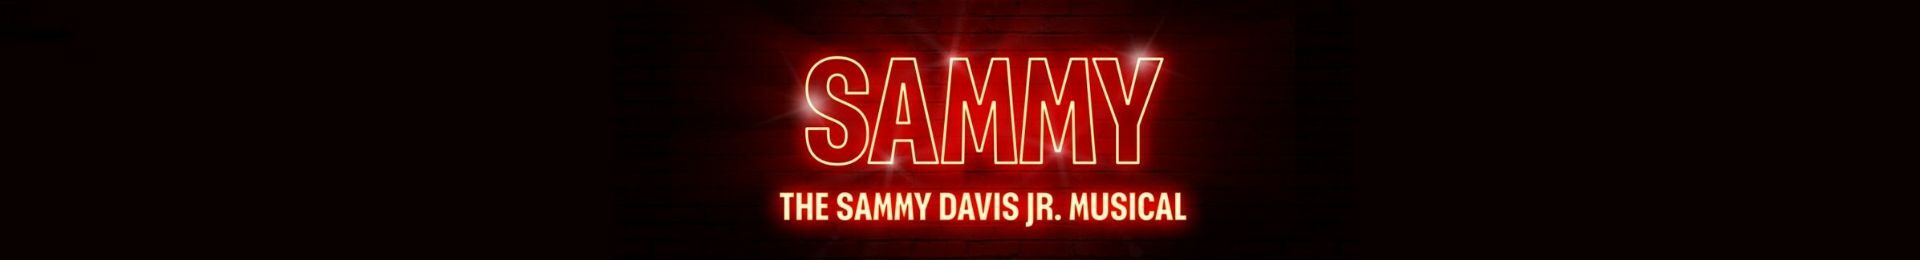 Sammy banner image